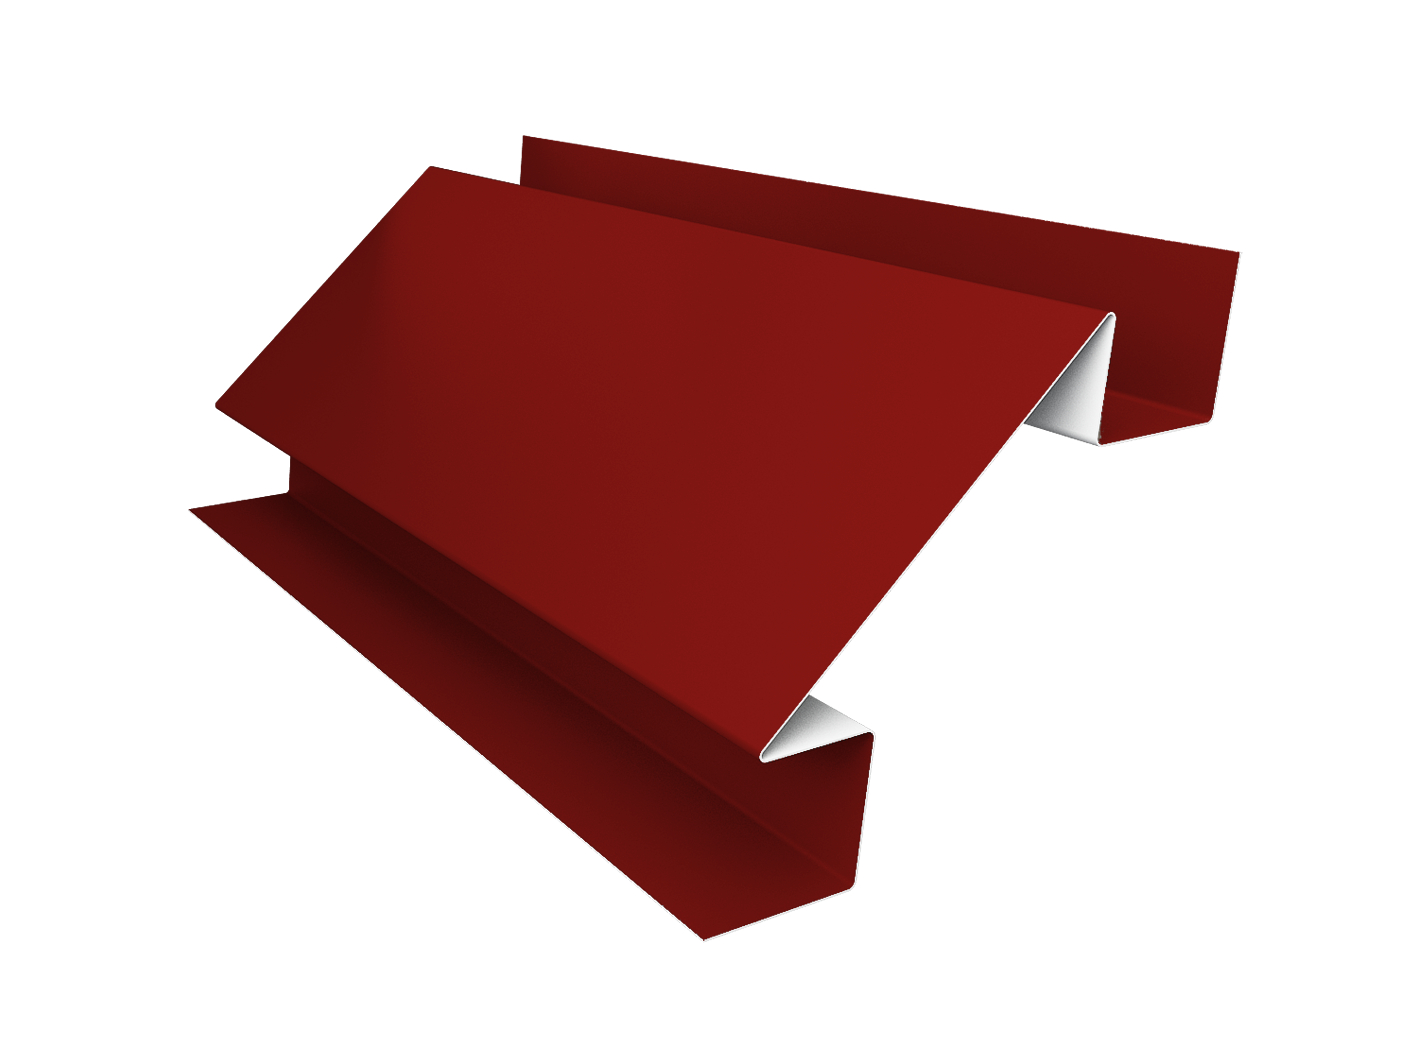 Планка угла внутреннего сложного Экобрус Satin с пленкой RAL 3011 коричнево-красный